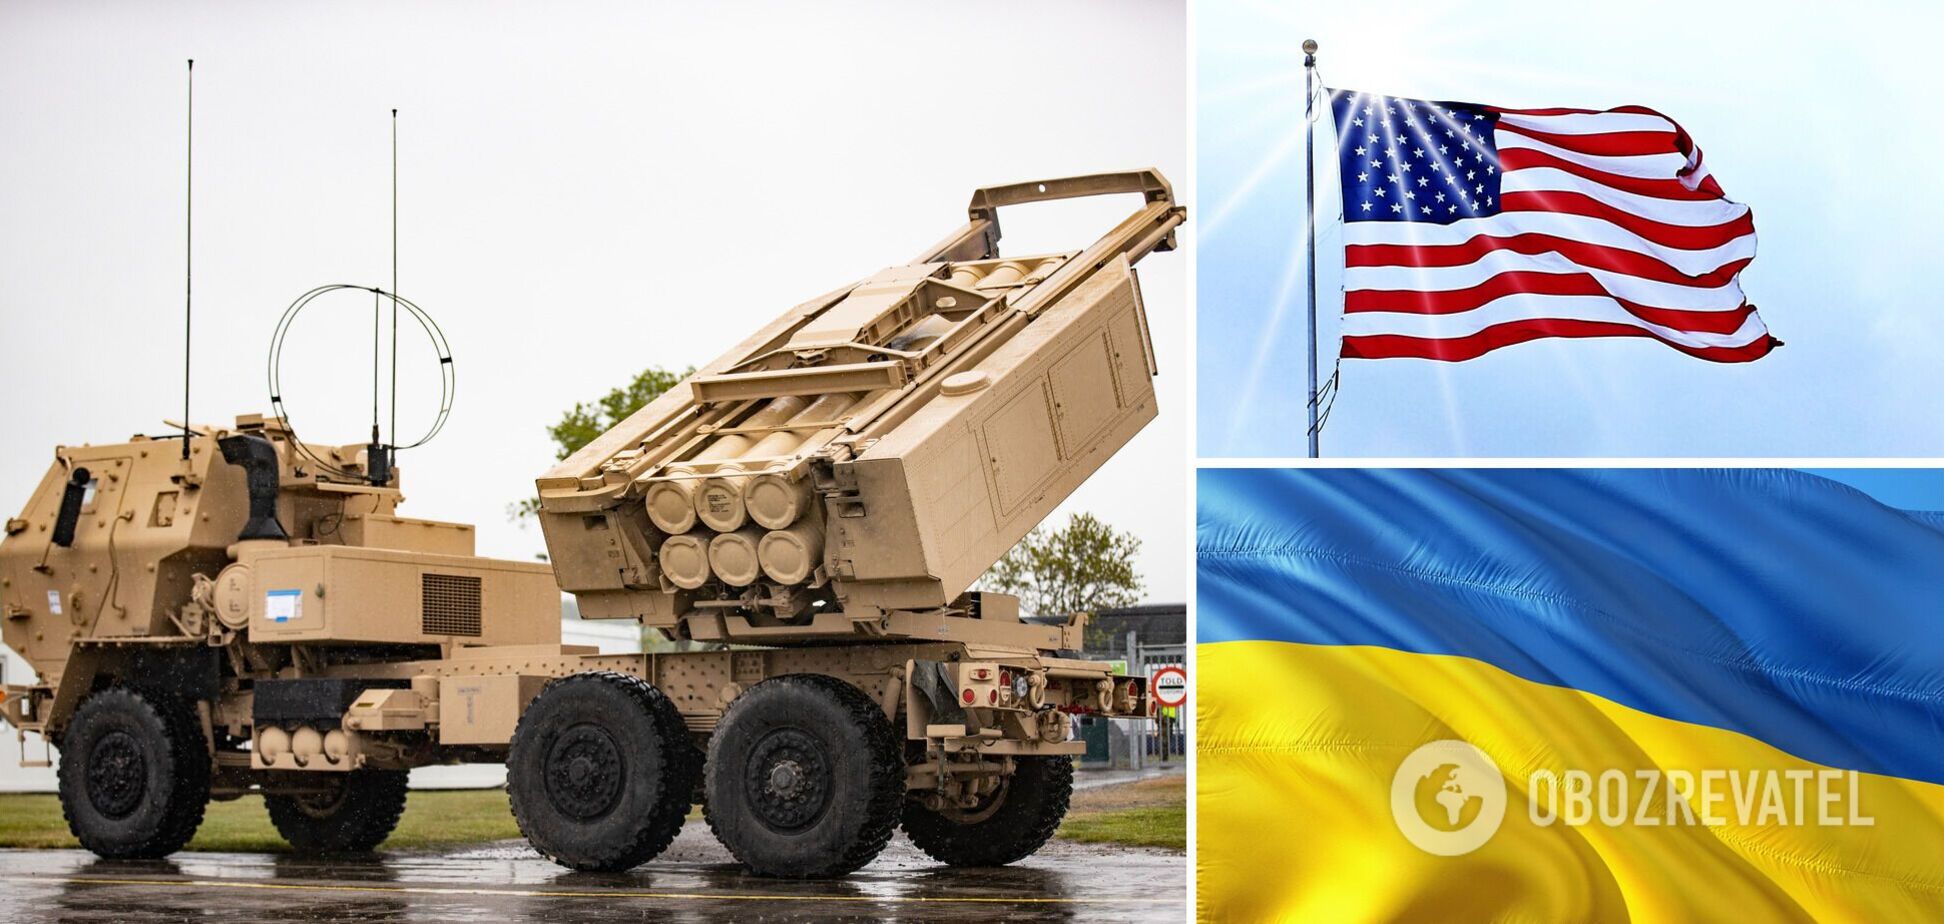 Україна отримала зброю, яка може вражати цілі навіть у Криму – Пентагон